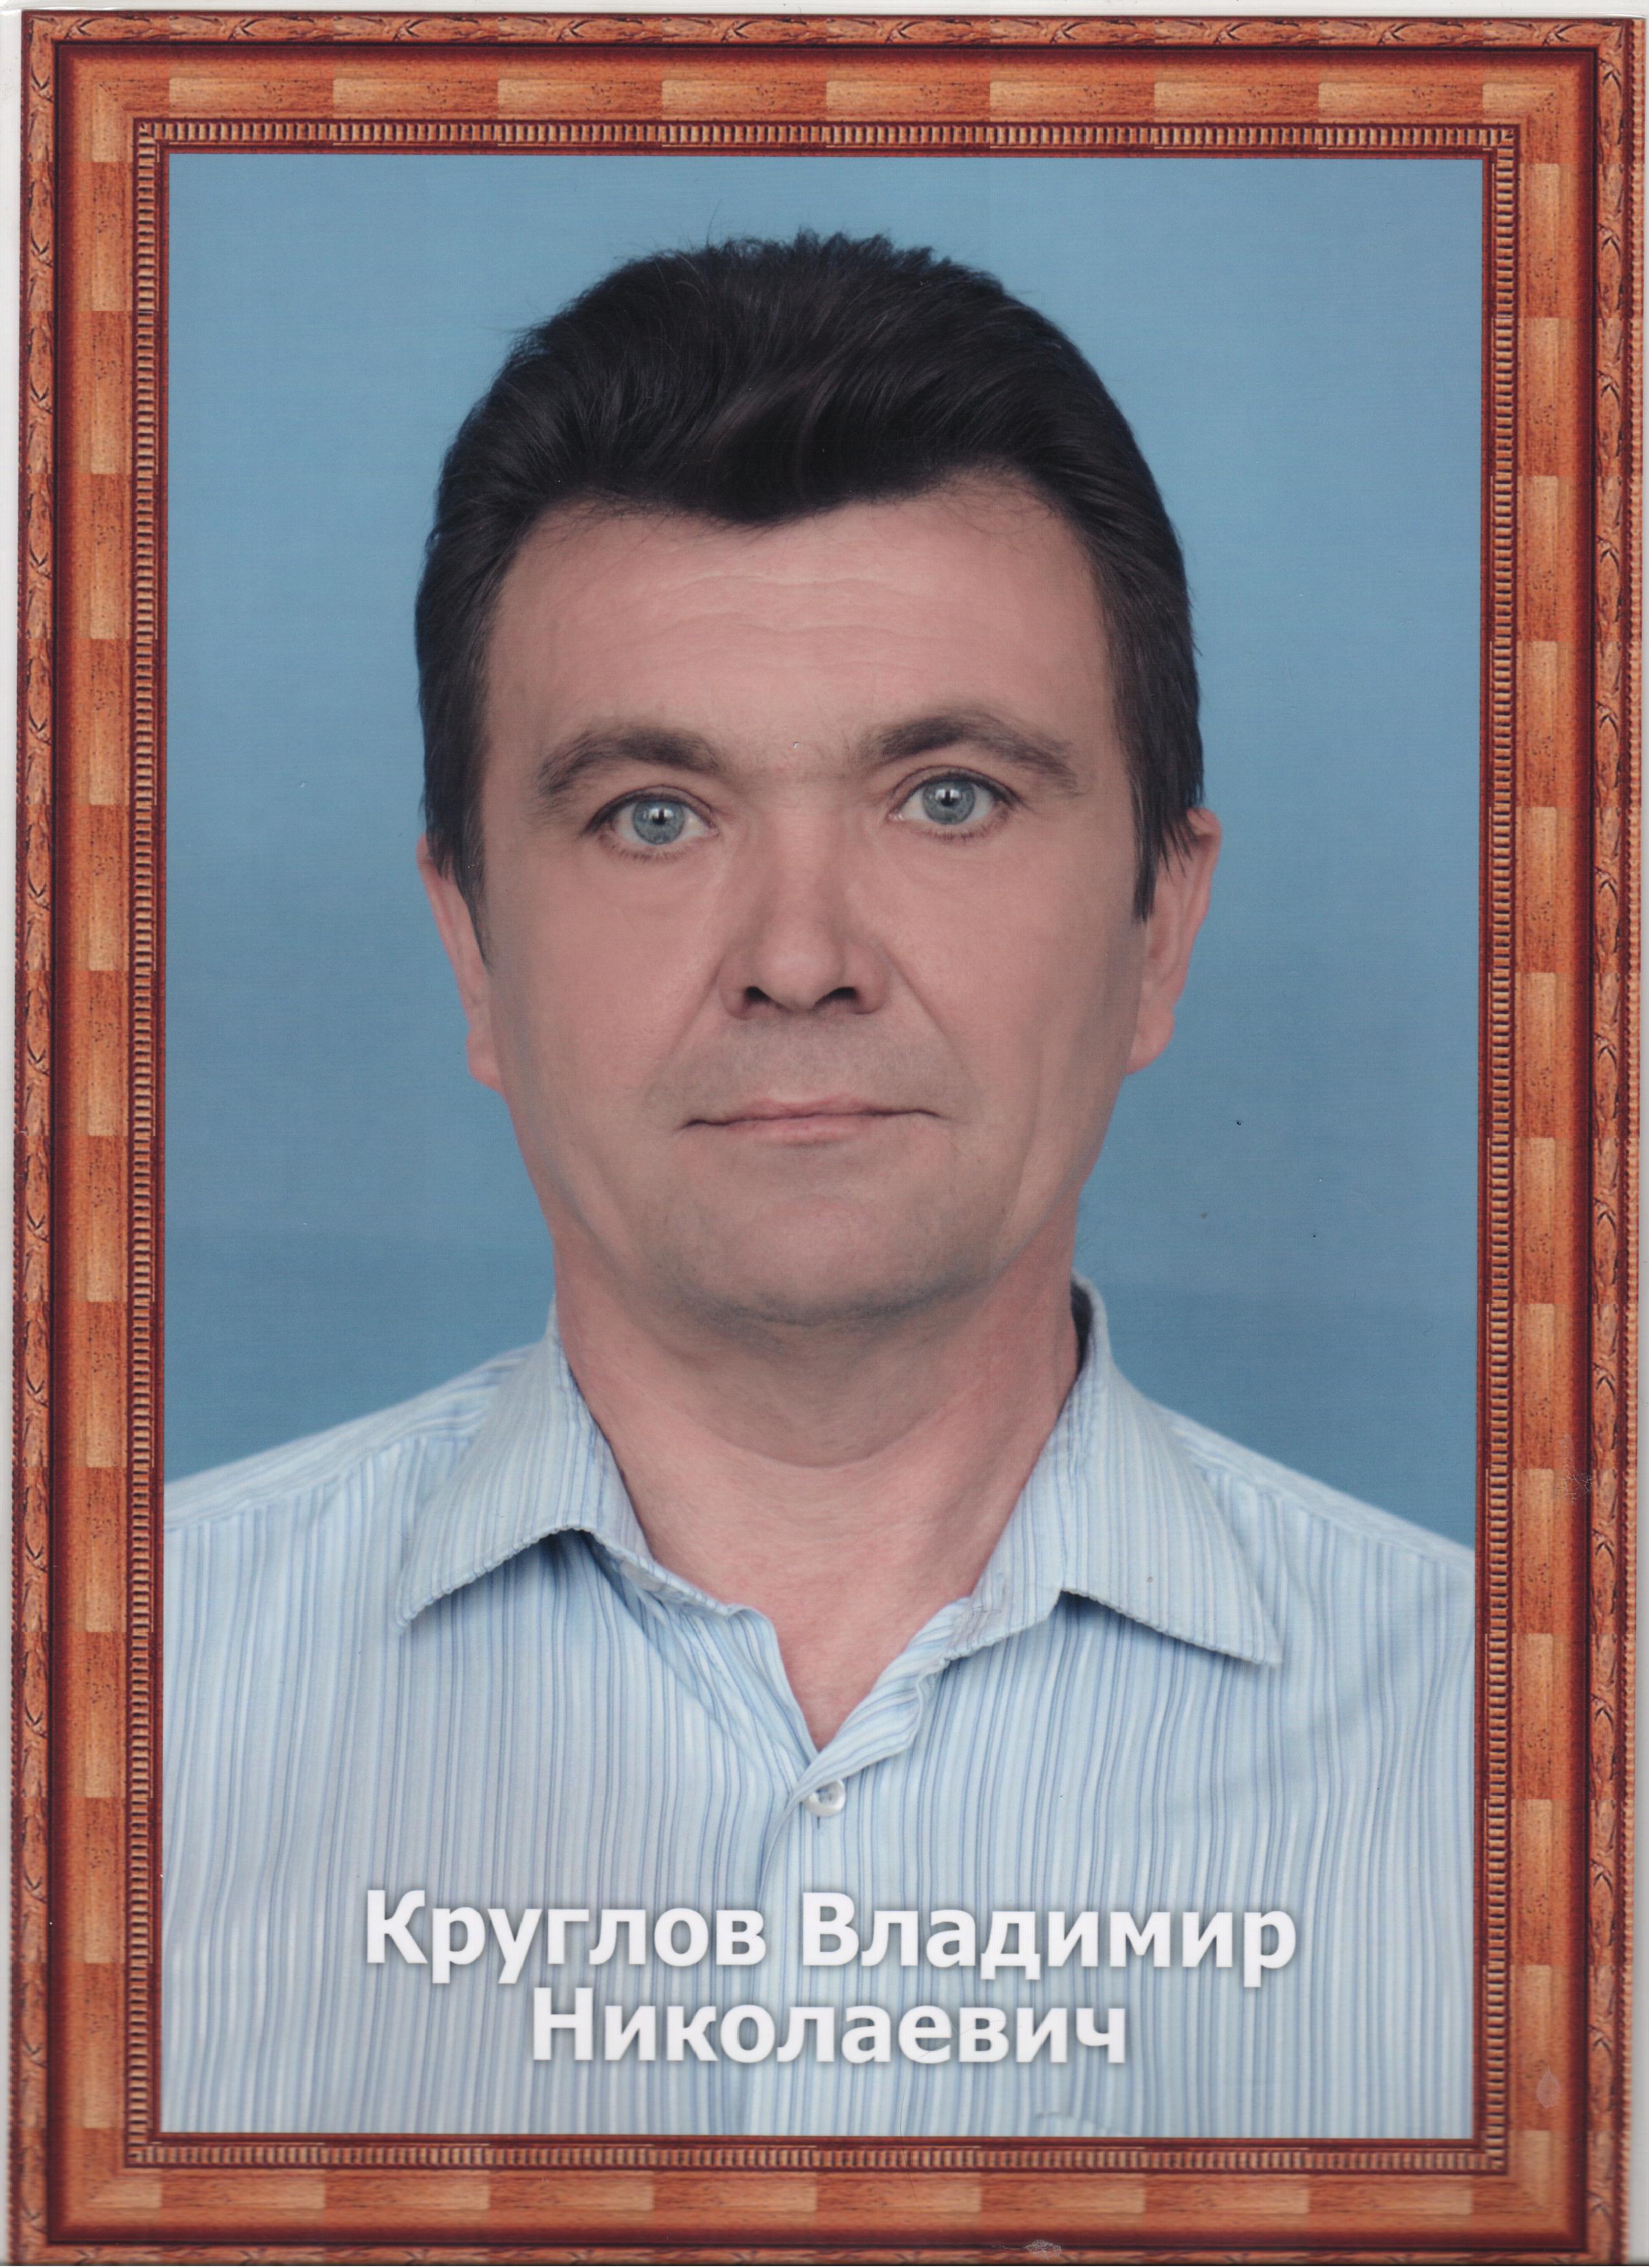 Круглов Владимир Николаевич.